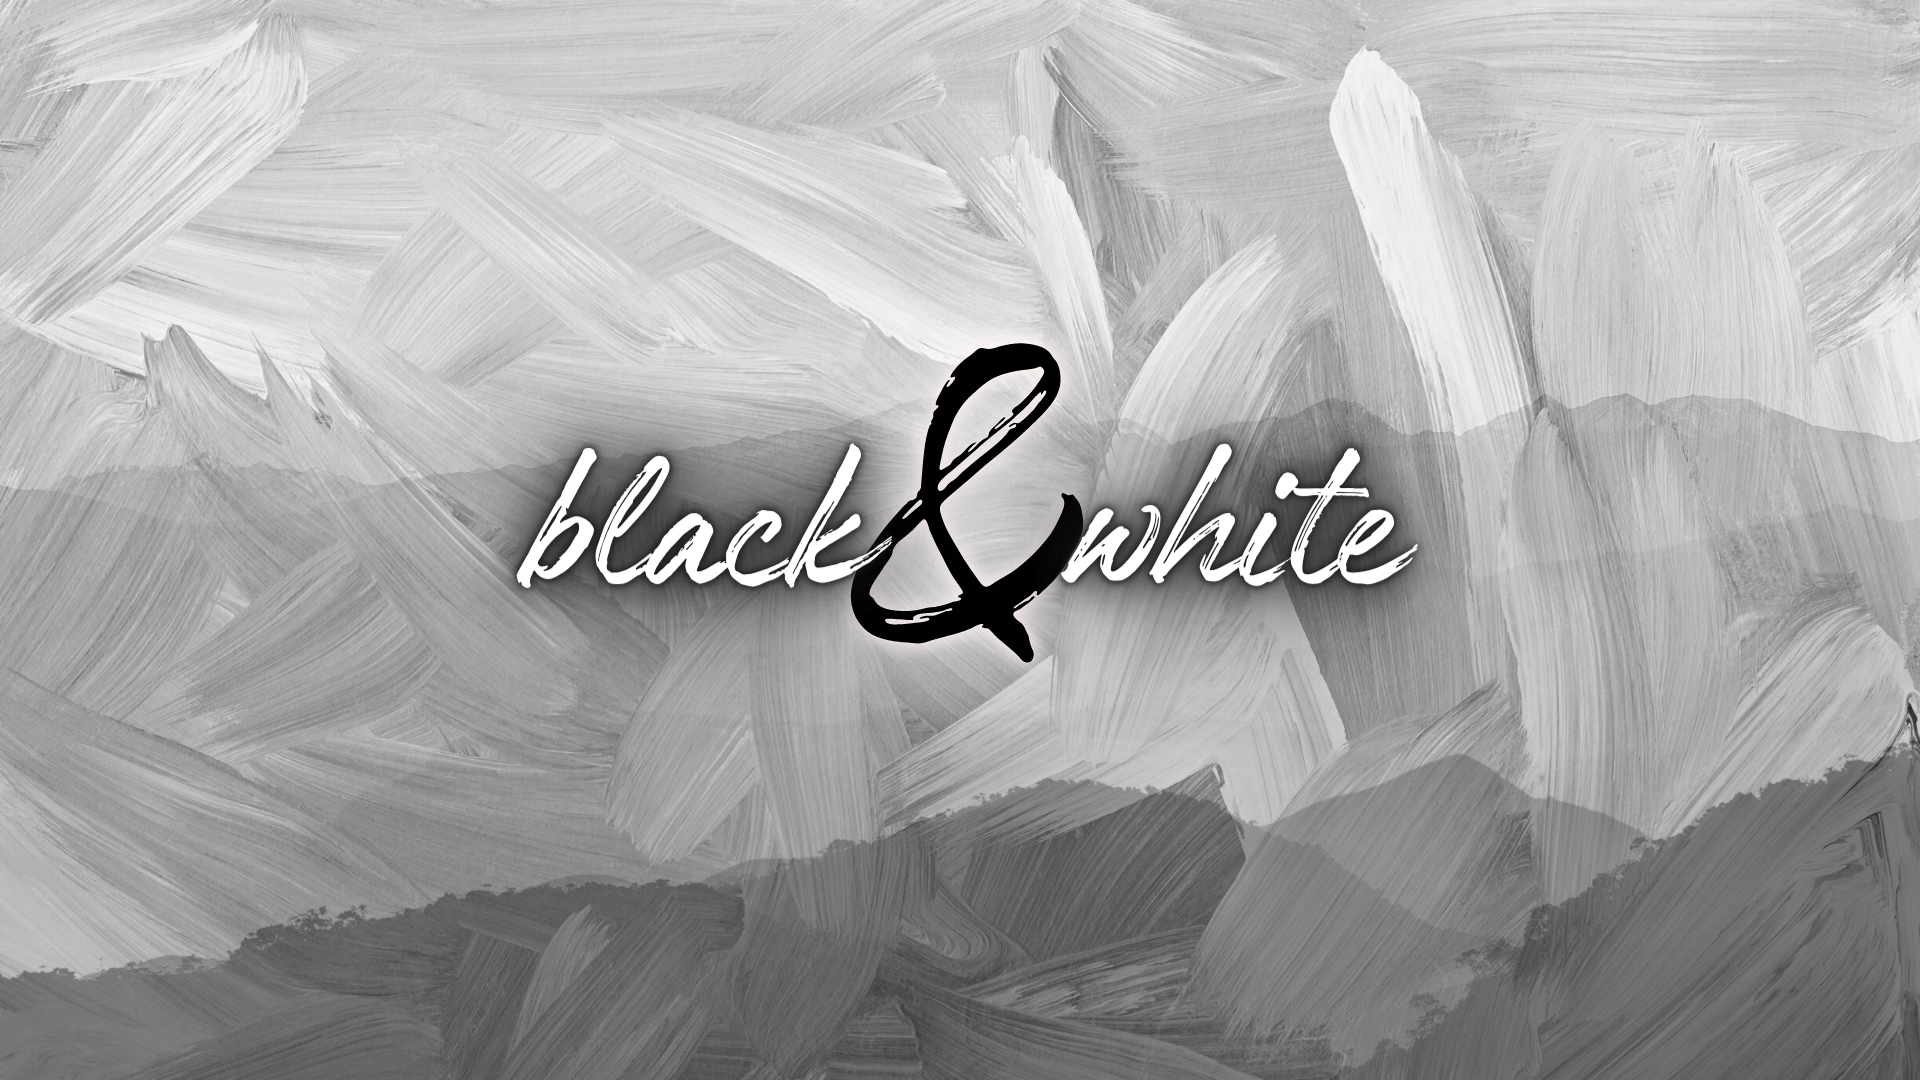 Black & White Art Show